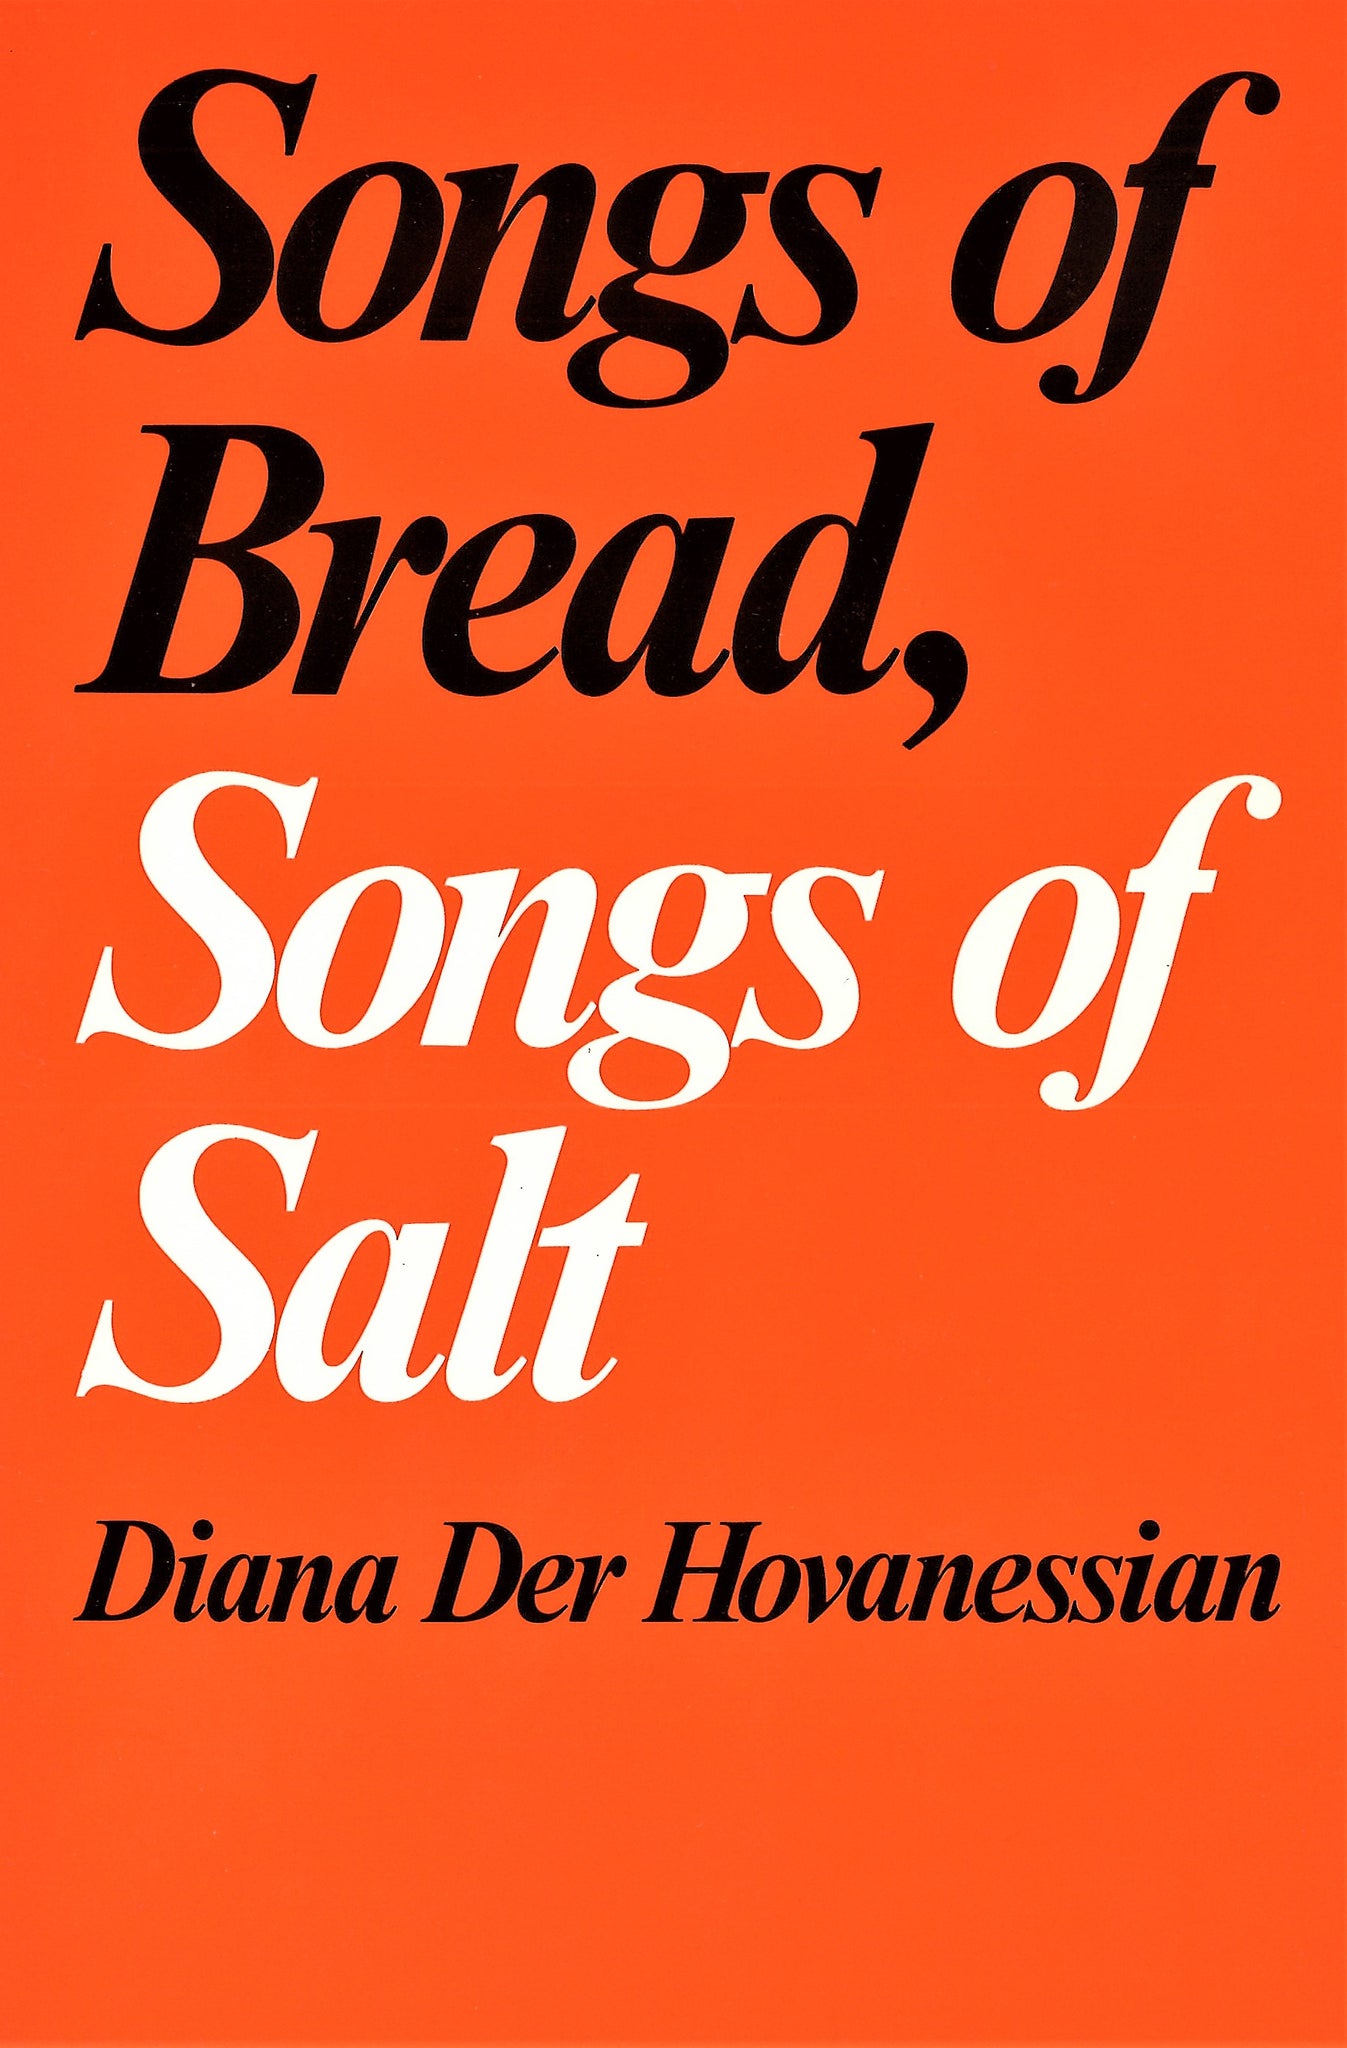 SONGS OF BREAD, SONGS OF SALT